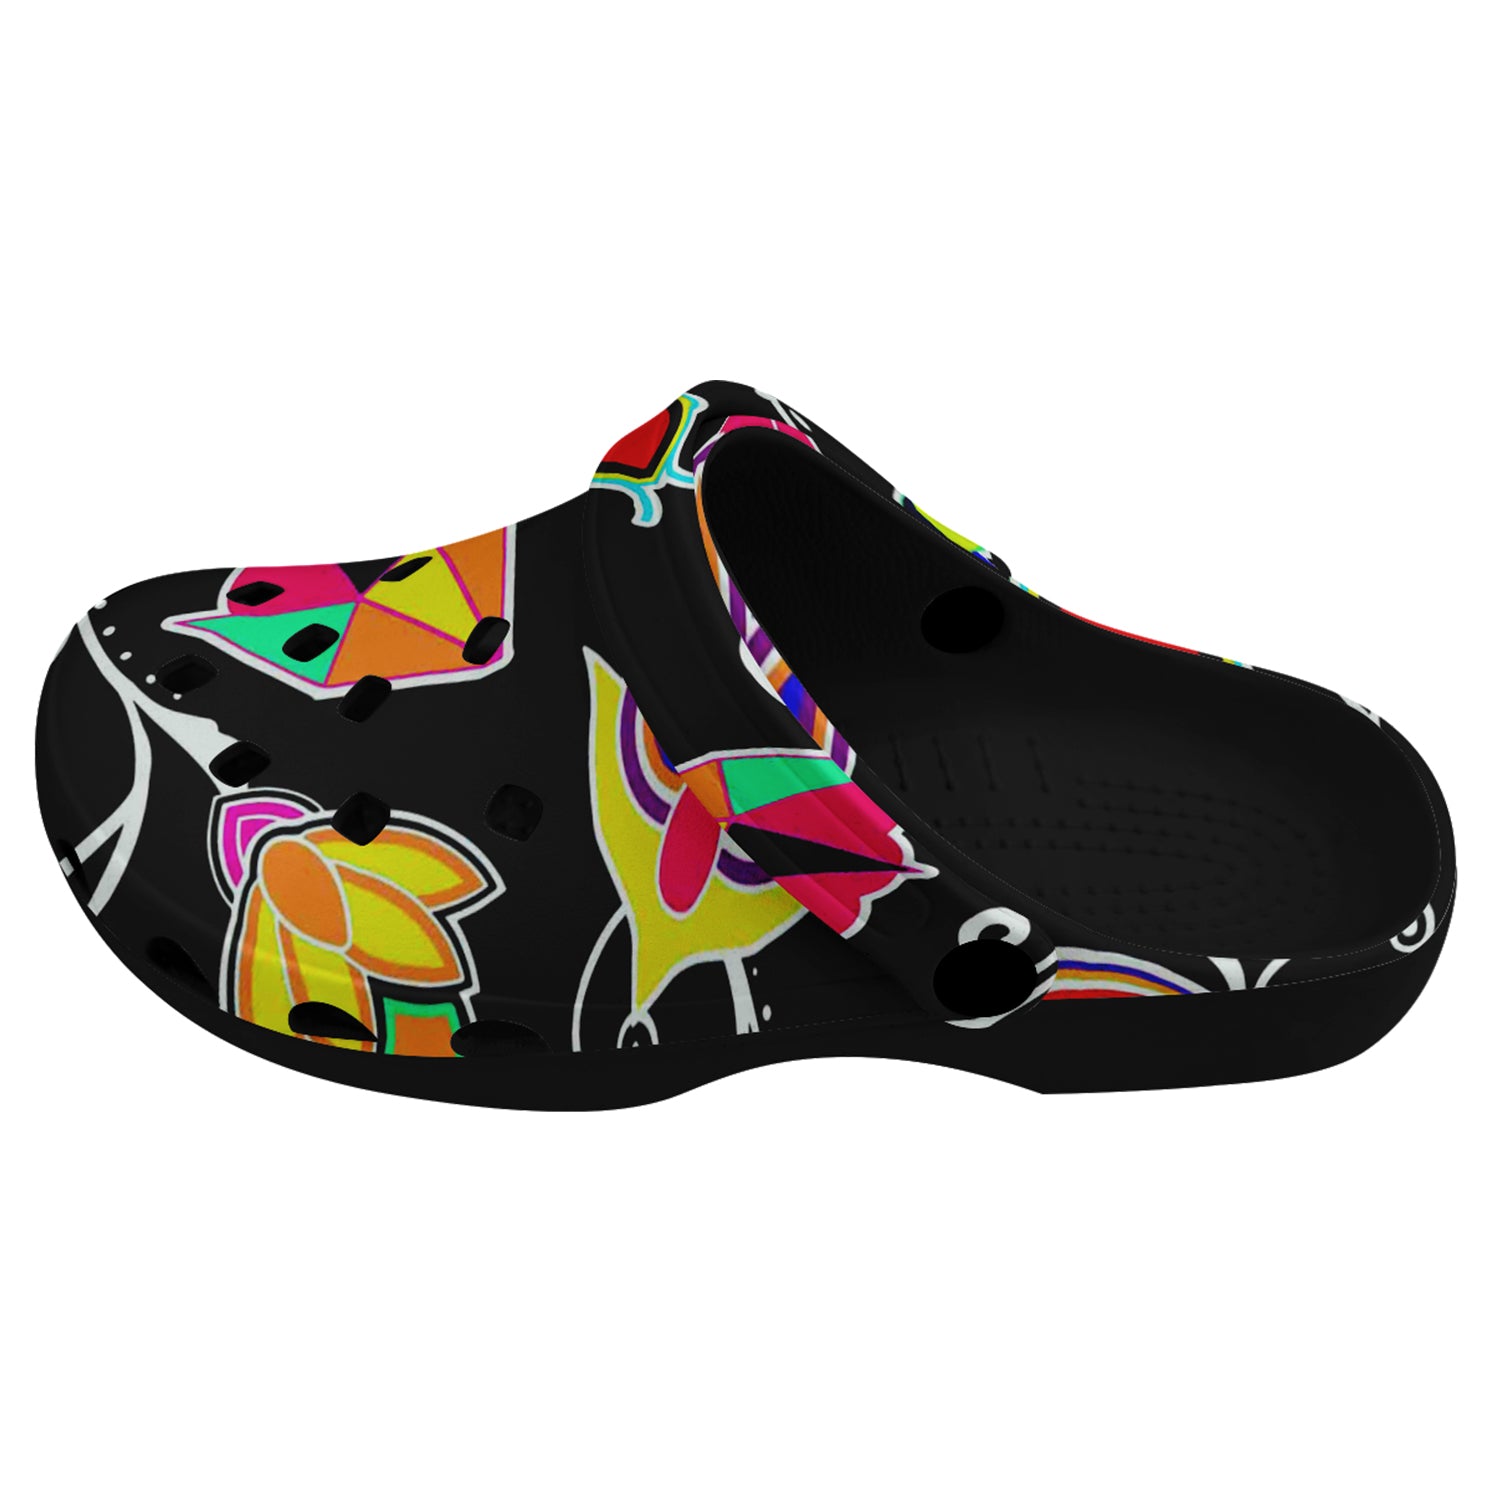 Indigenous Paisley Black Muddies Unisex Clog Shoes